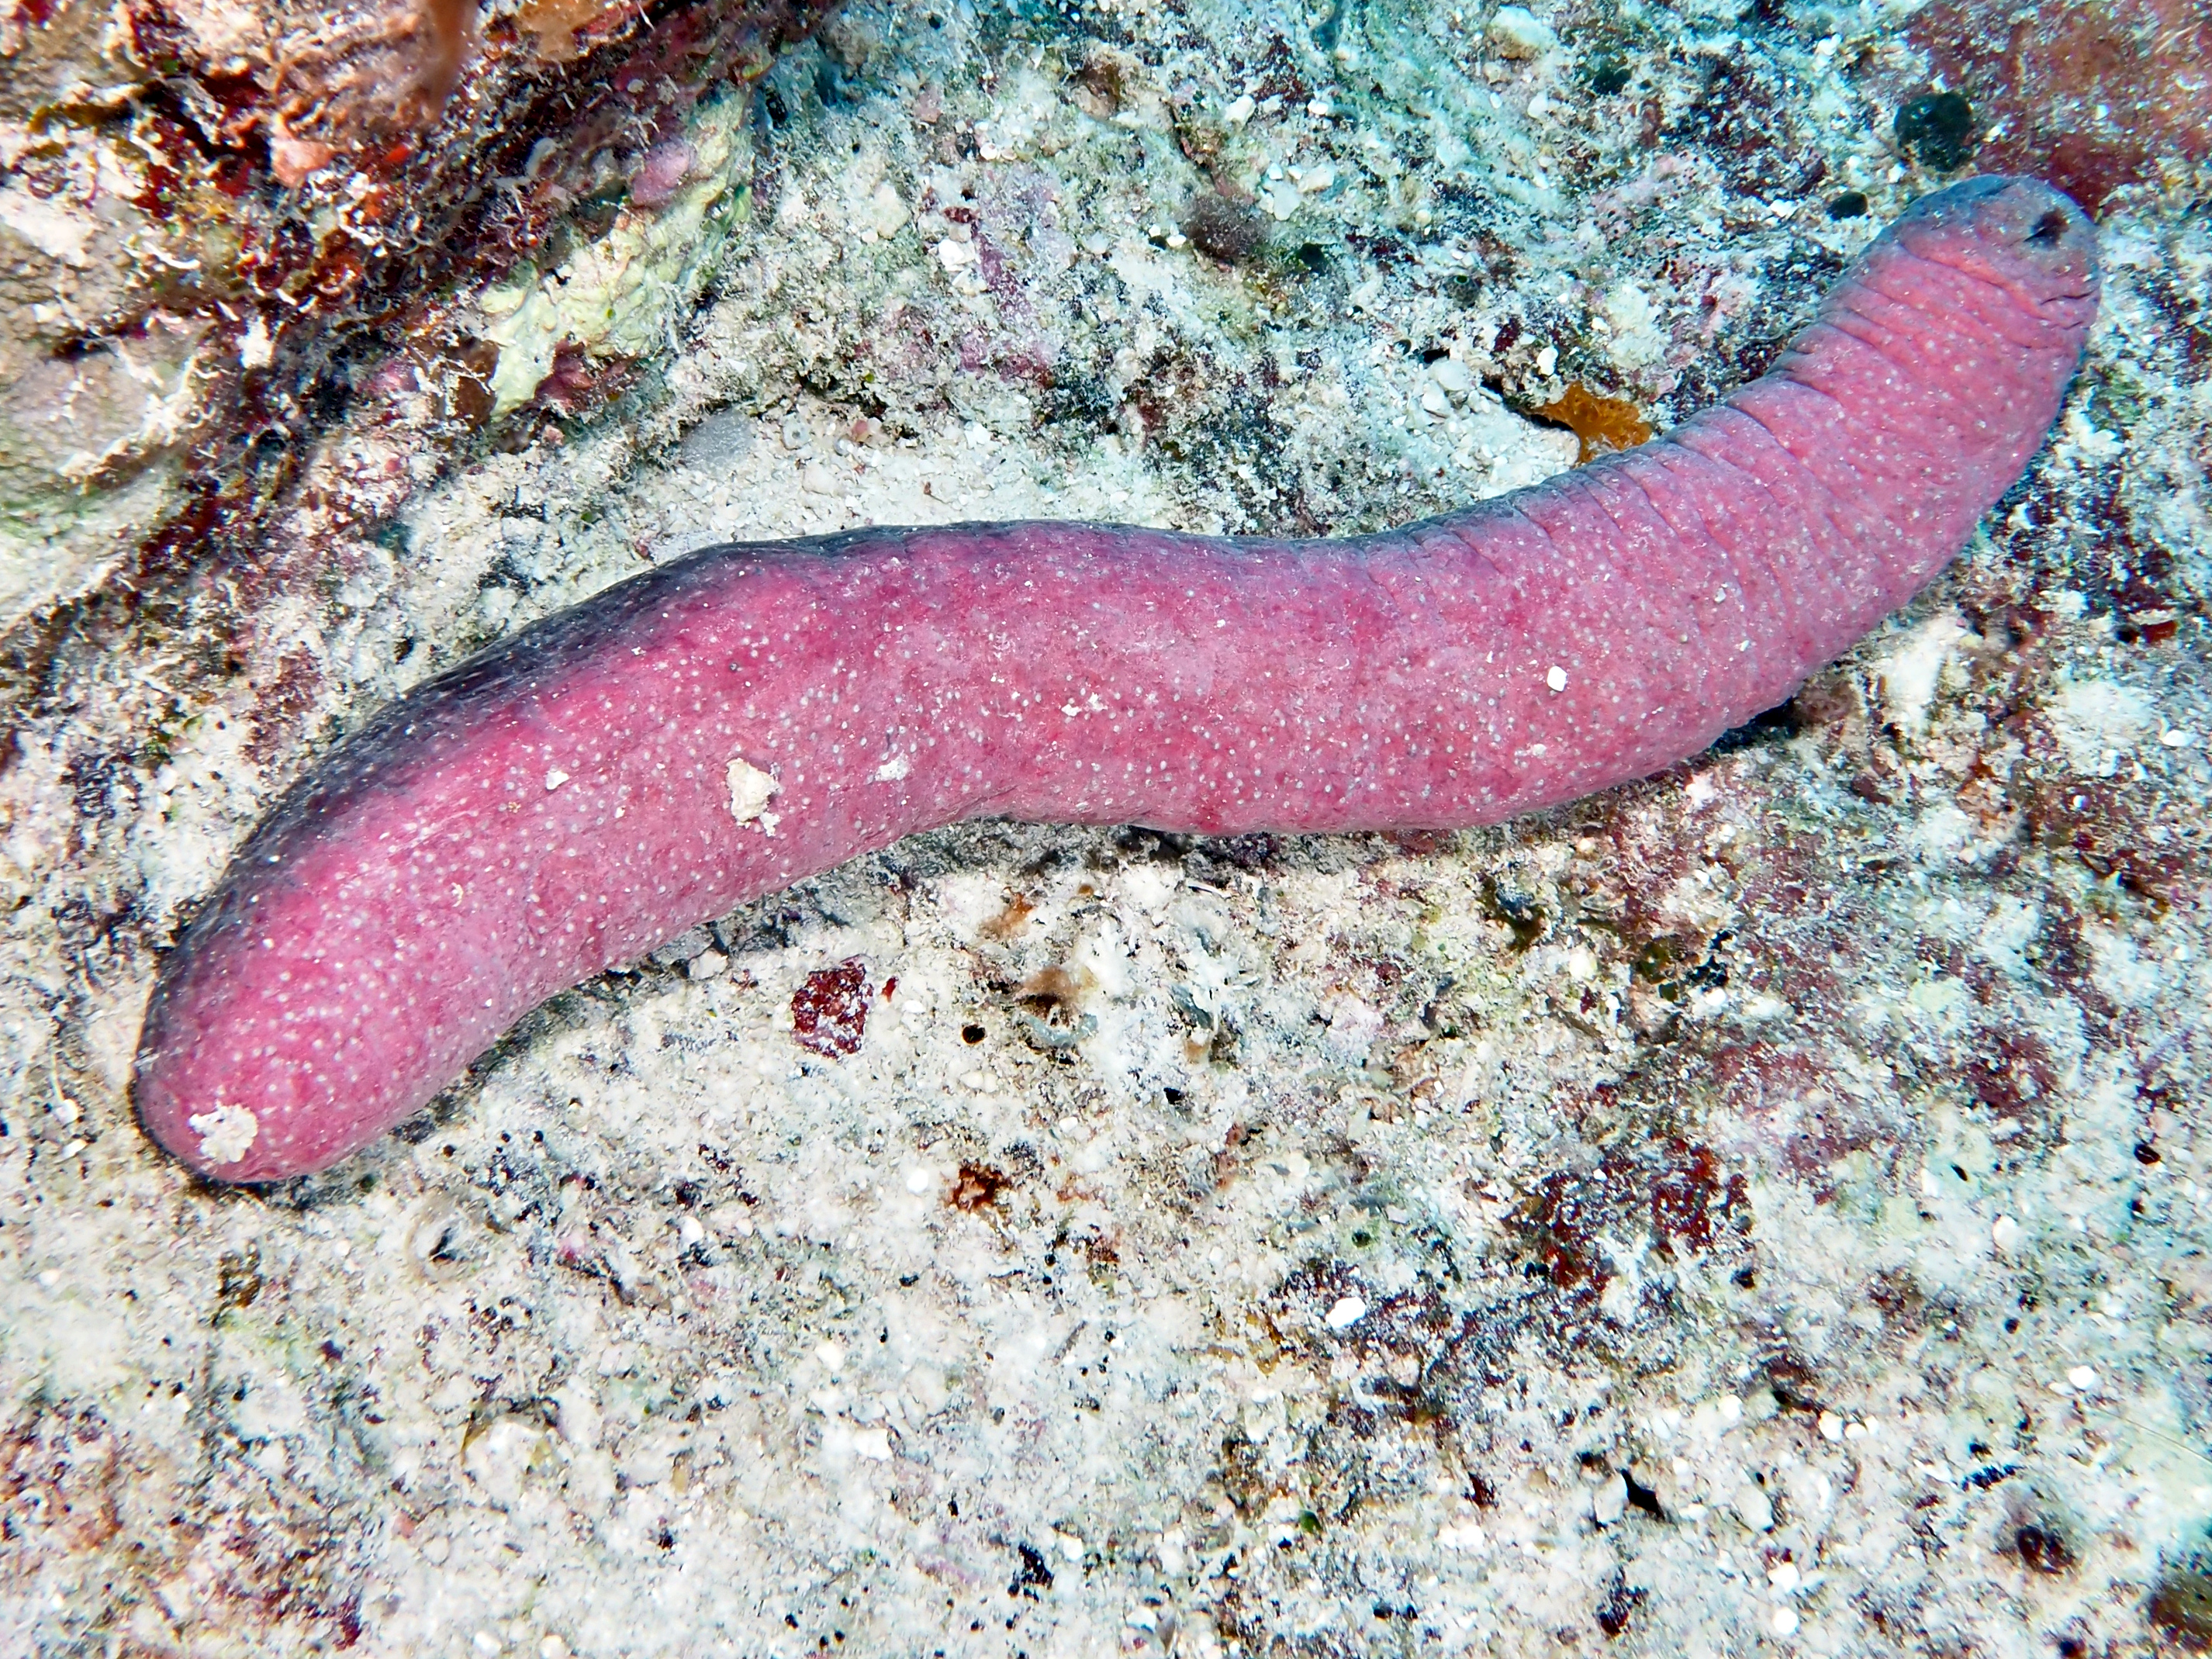 Pinkfish Sea Cucumber - Holothuria edulis